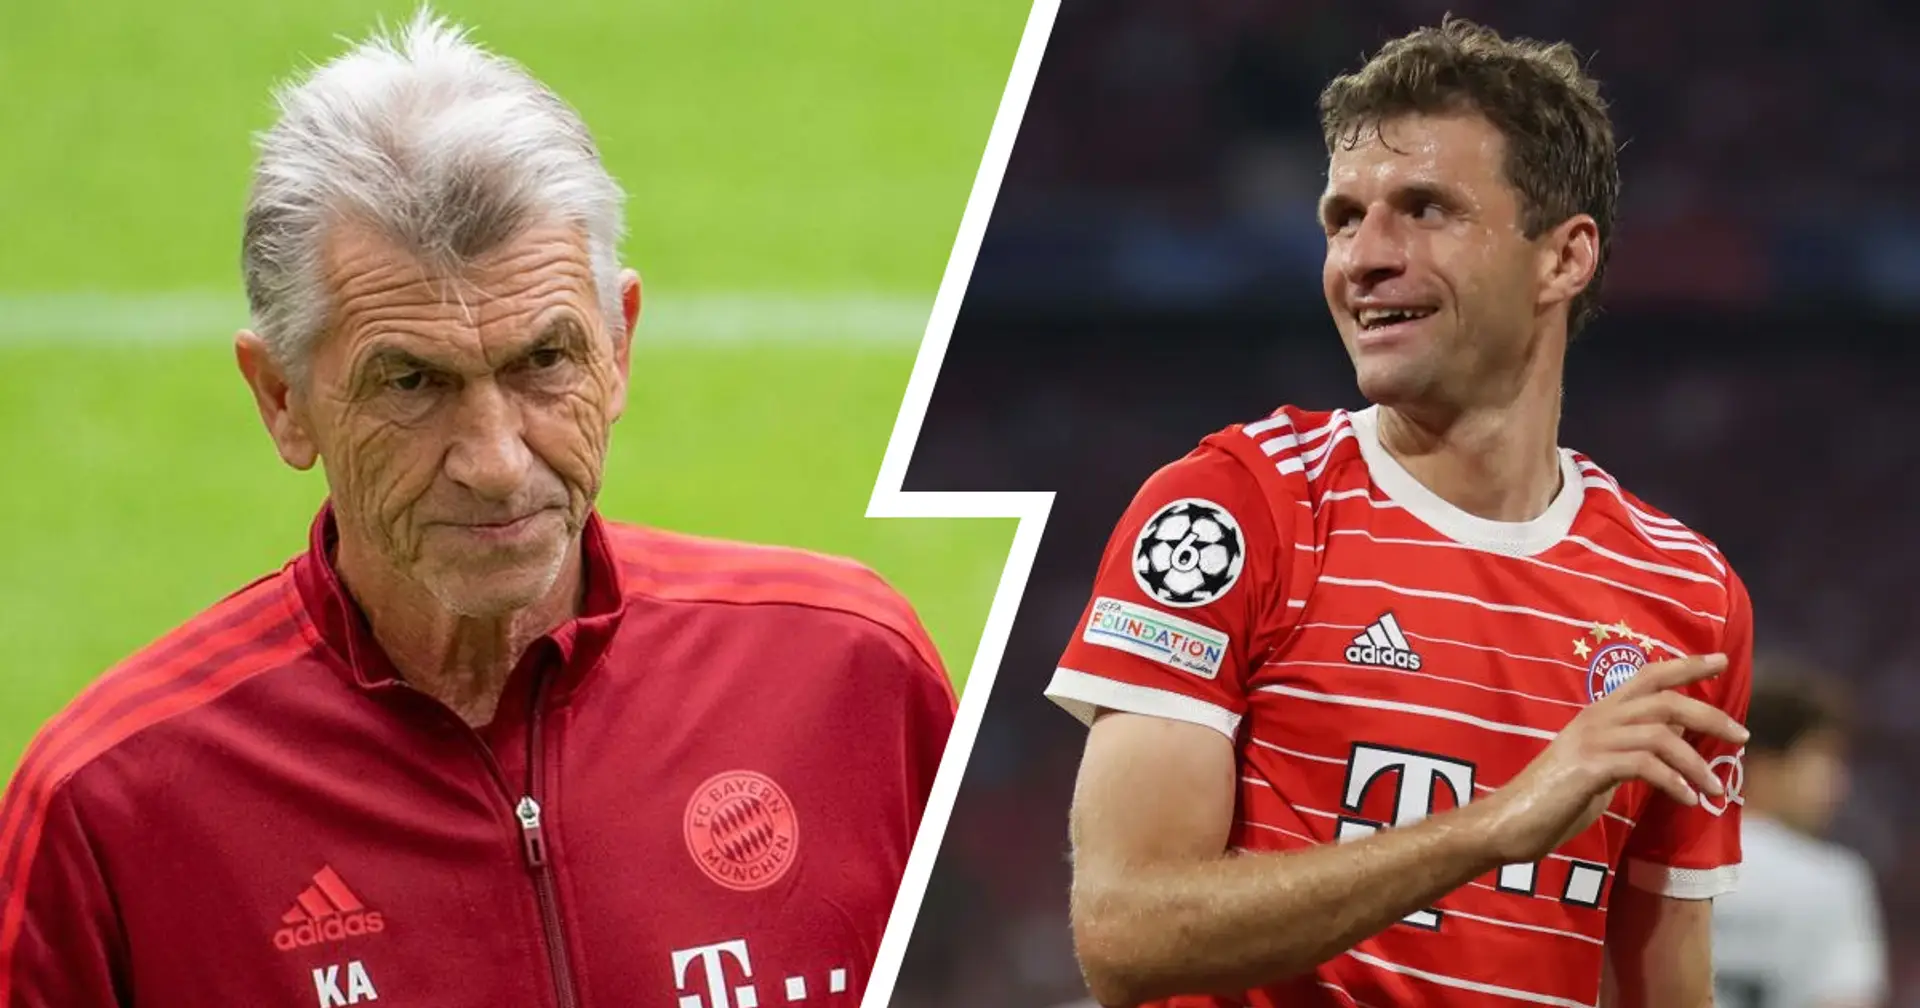 Augenthaler: "Wenn Müller seine Karriere beendet, wird er dem FC Bayern hoffentlich verbunden bleiben"